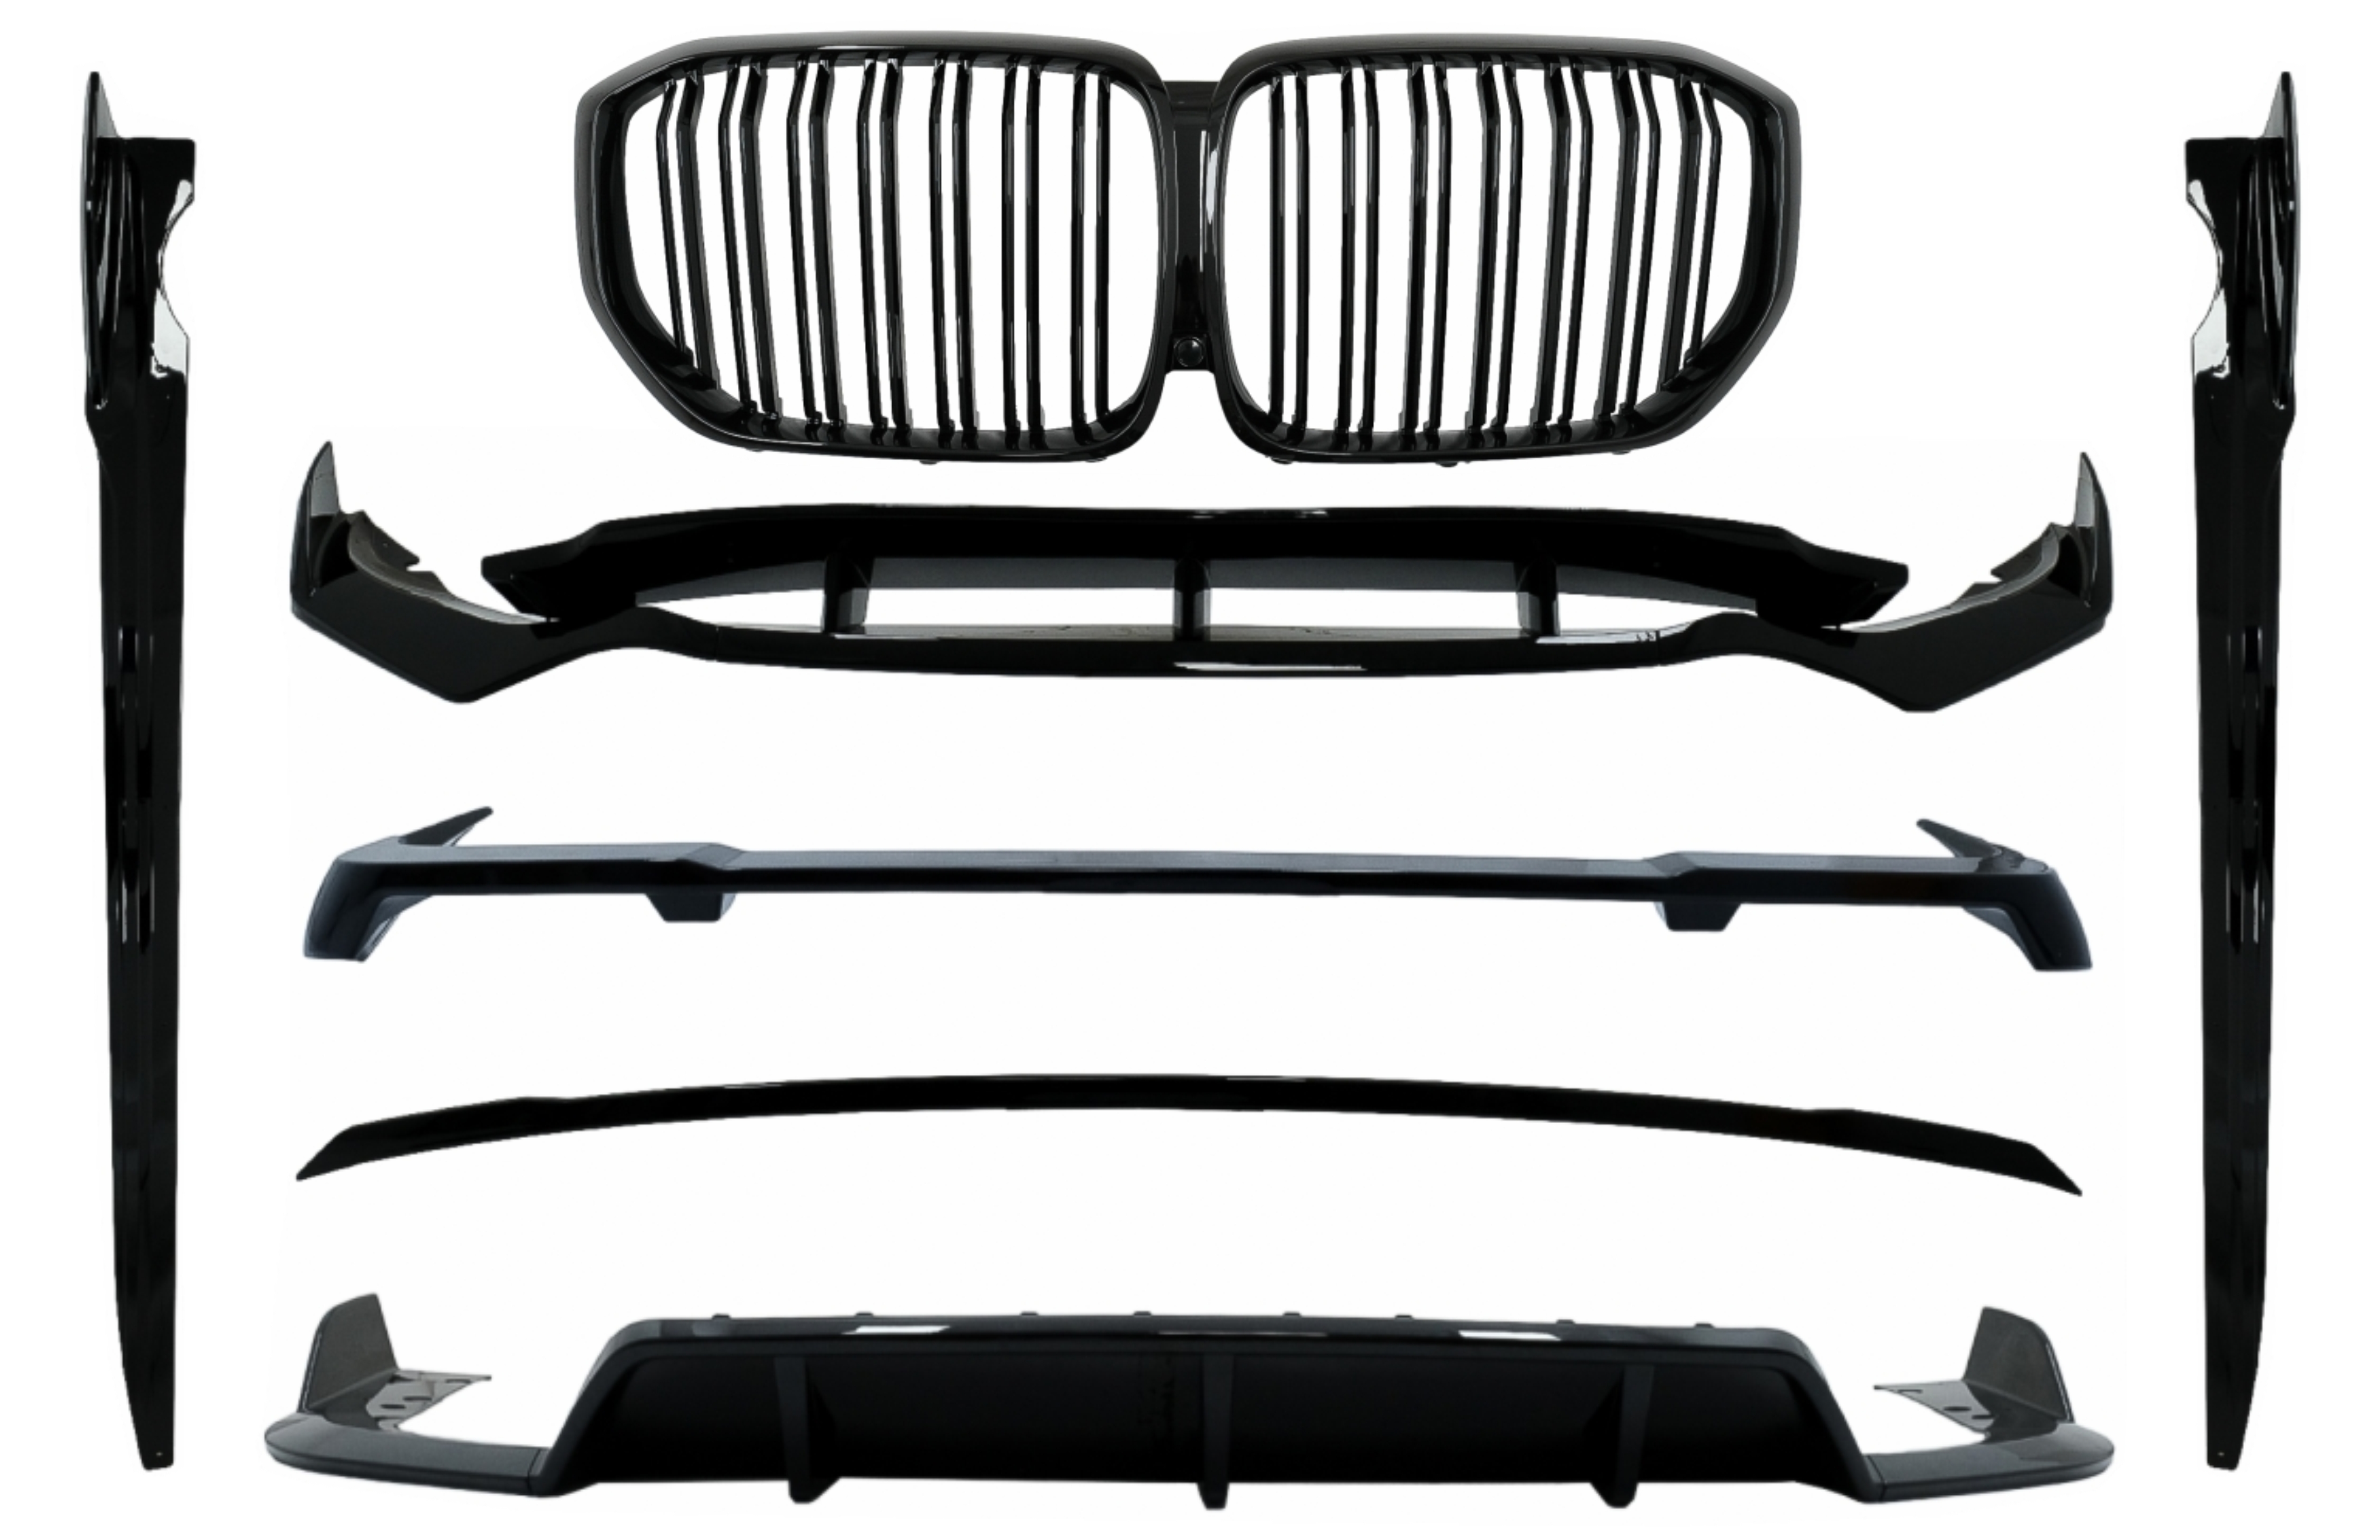 Aero Body Kit központi vese rácsokkal, dupla csíkkal, BMW X5 G05 (2018-tól) M Black Knight Design Piano Black modellhez